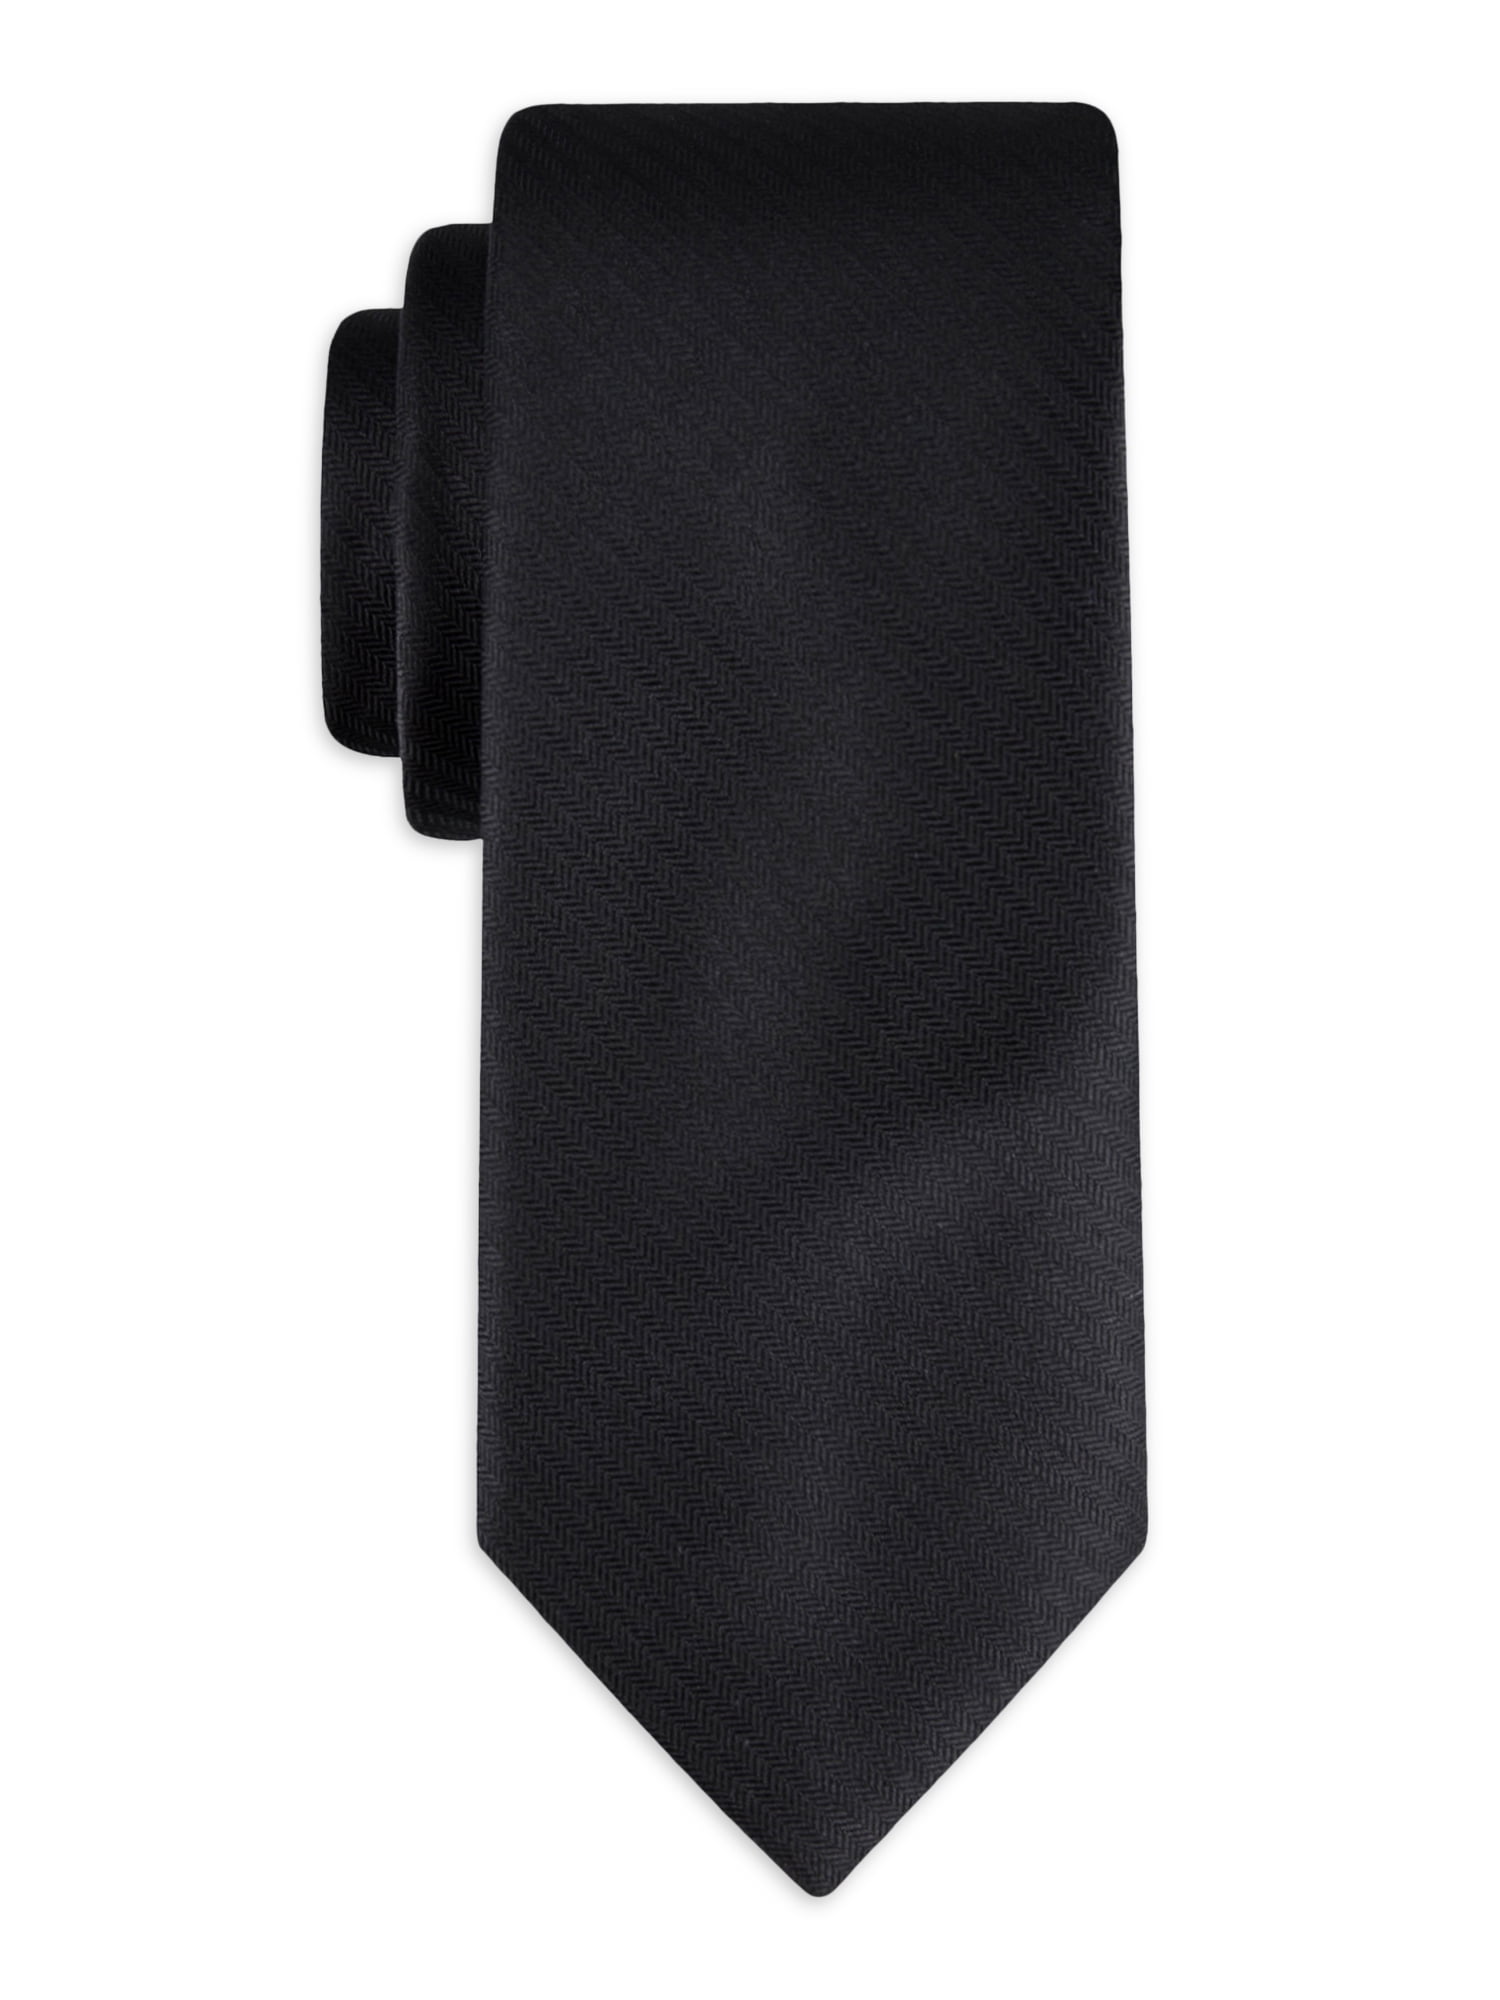 George Men's Solid Black Slim Necktie, One Size - Walmart.com